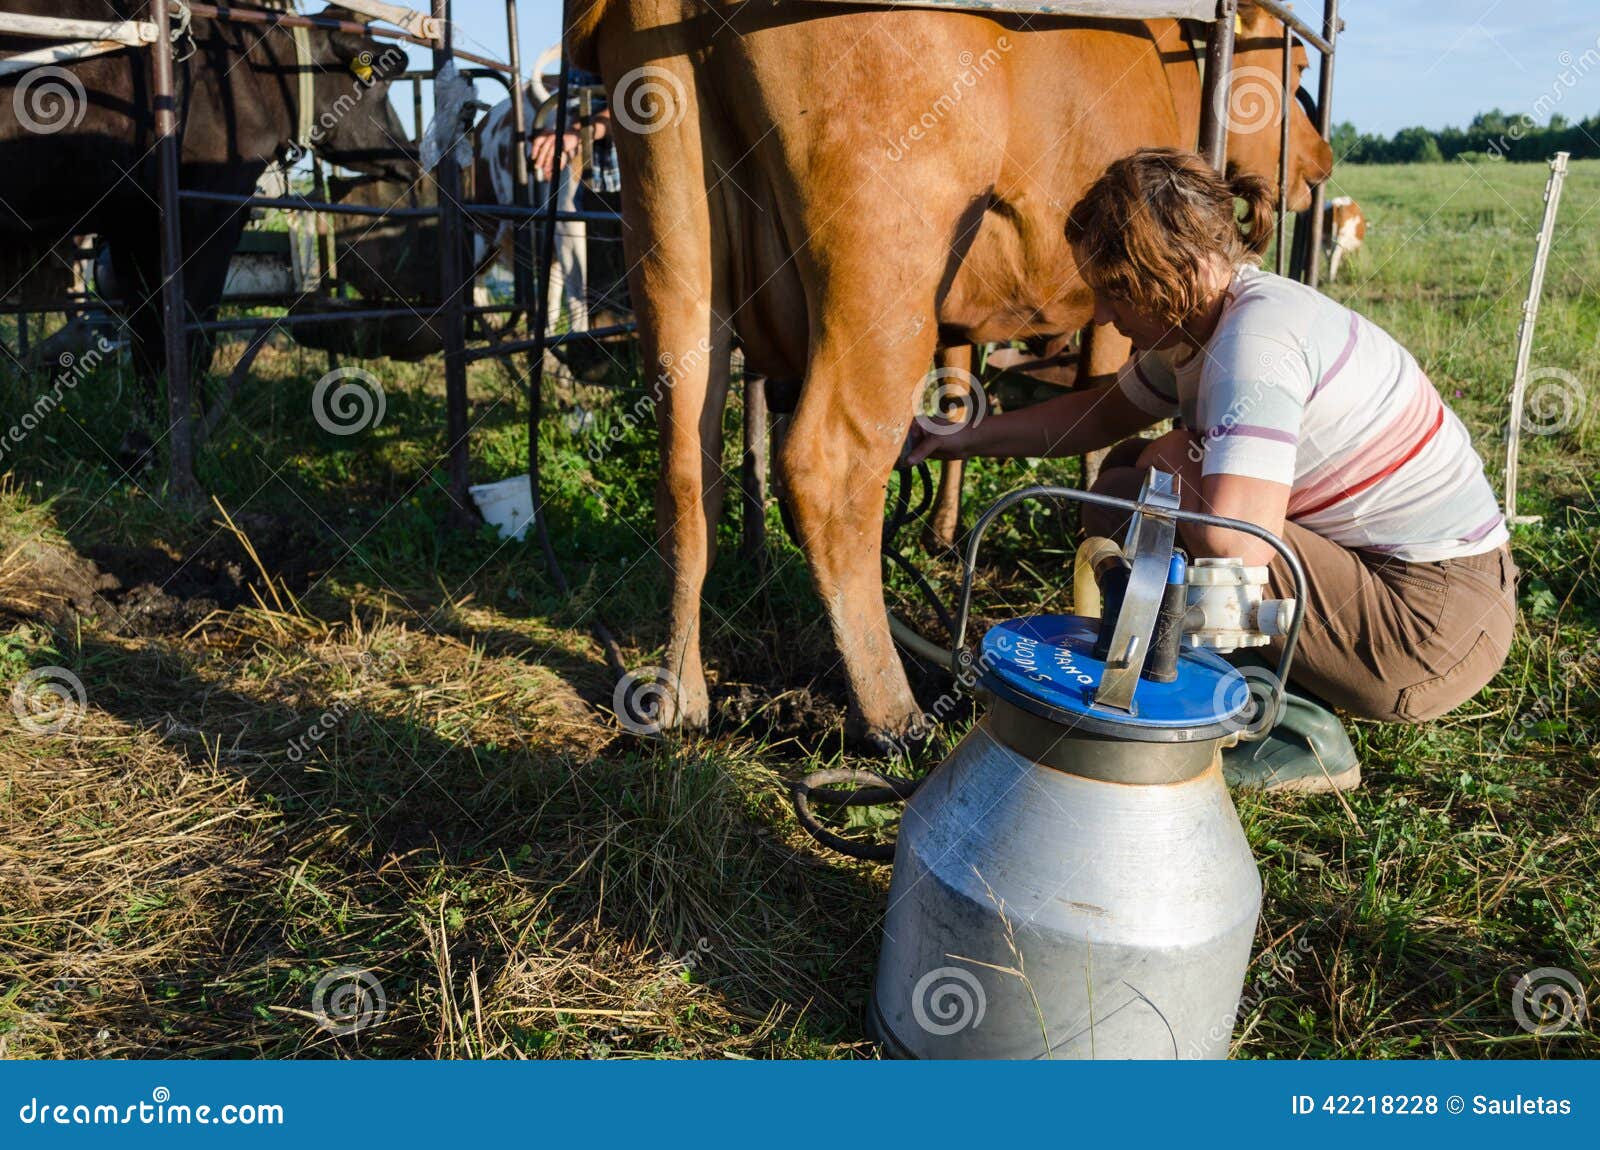 水牛被挤奶机挤奶高清摄影大图-千库网